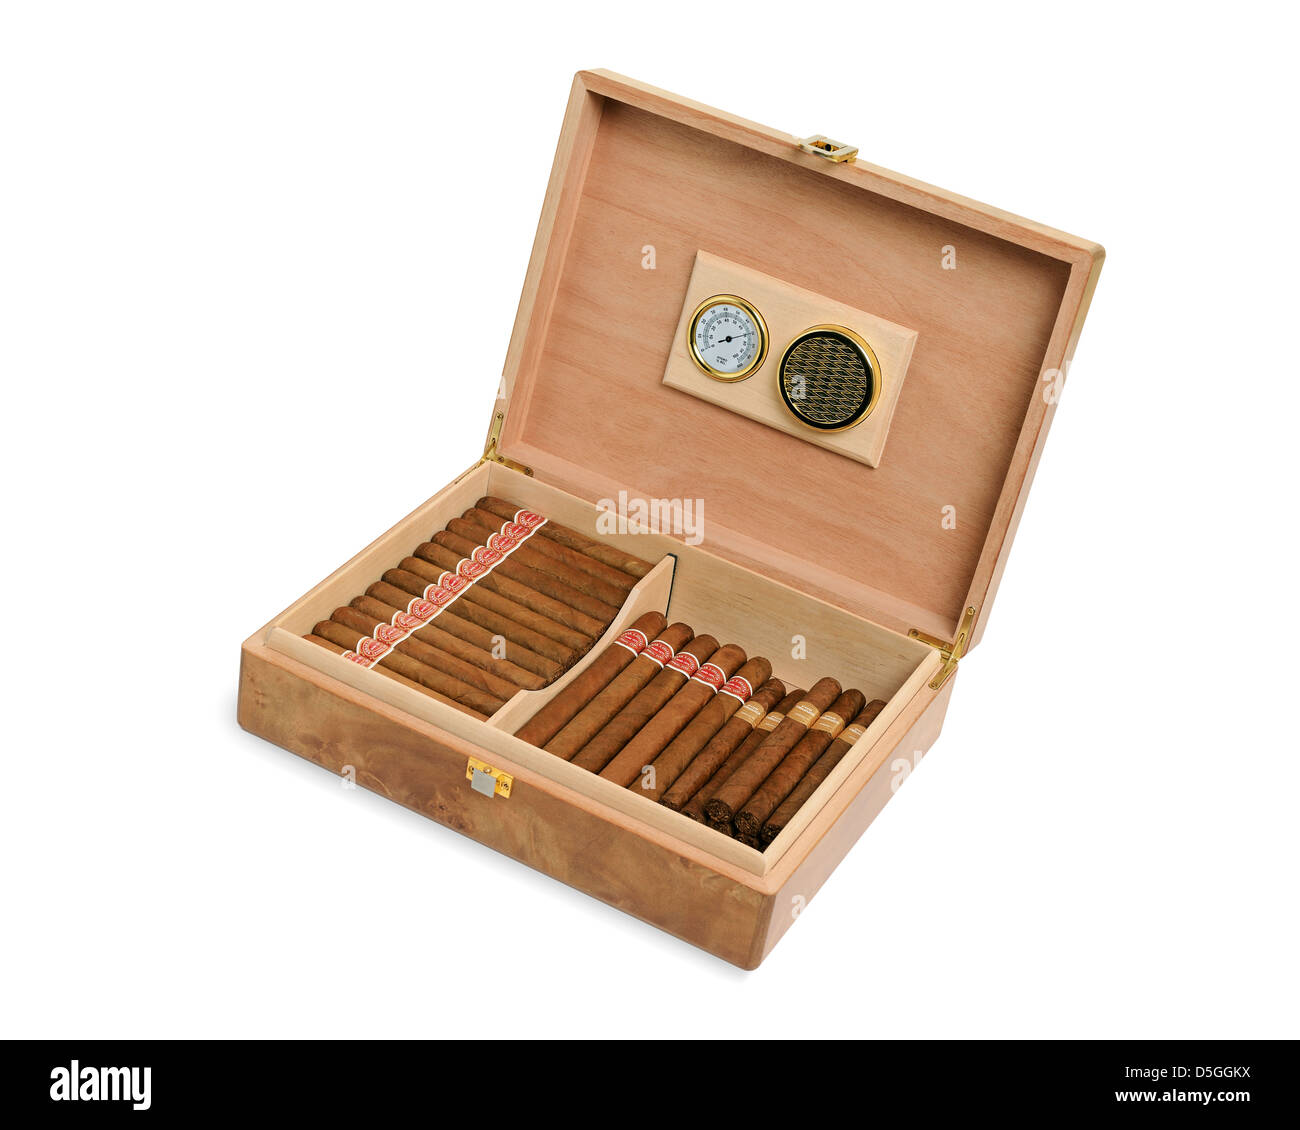 Zigarrenschachtel Stockfotos und -bilder Kaufen - Alamy